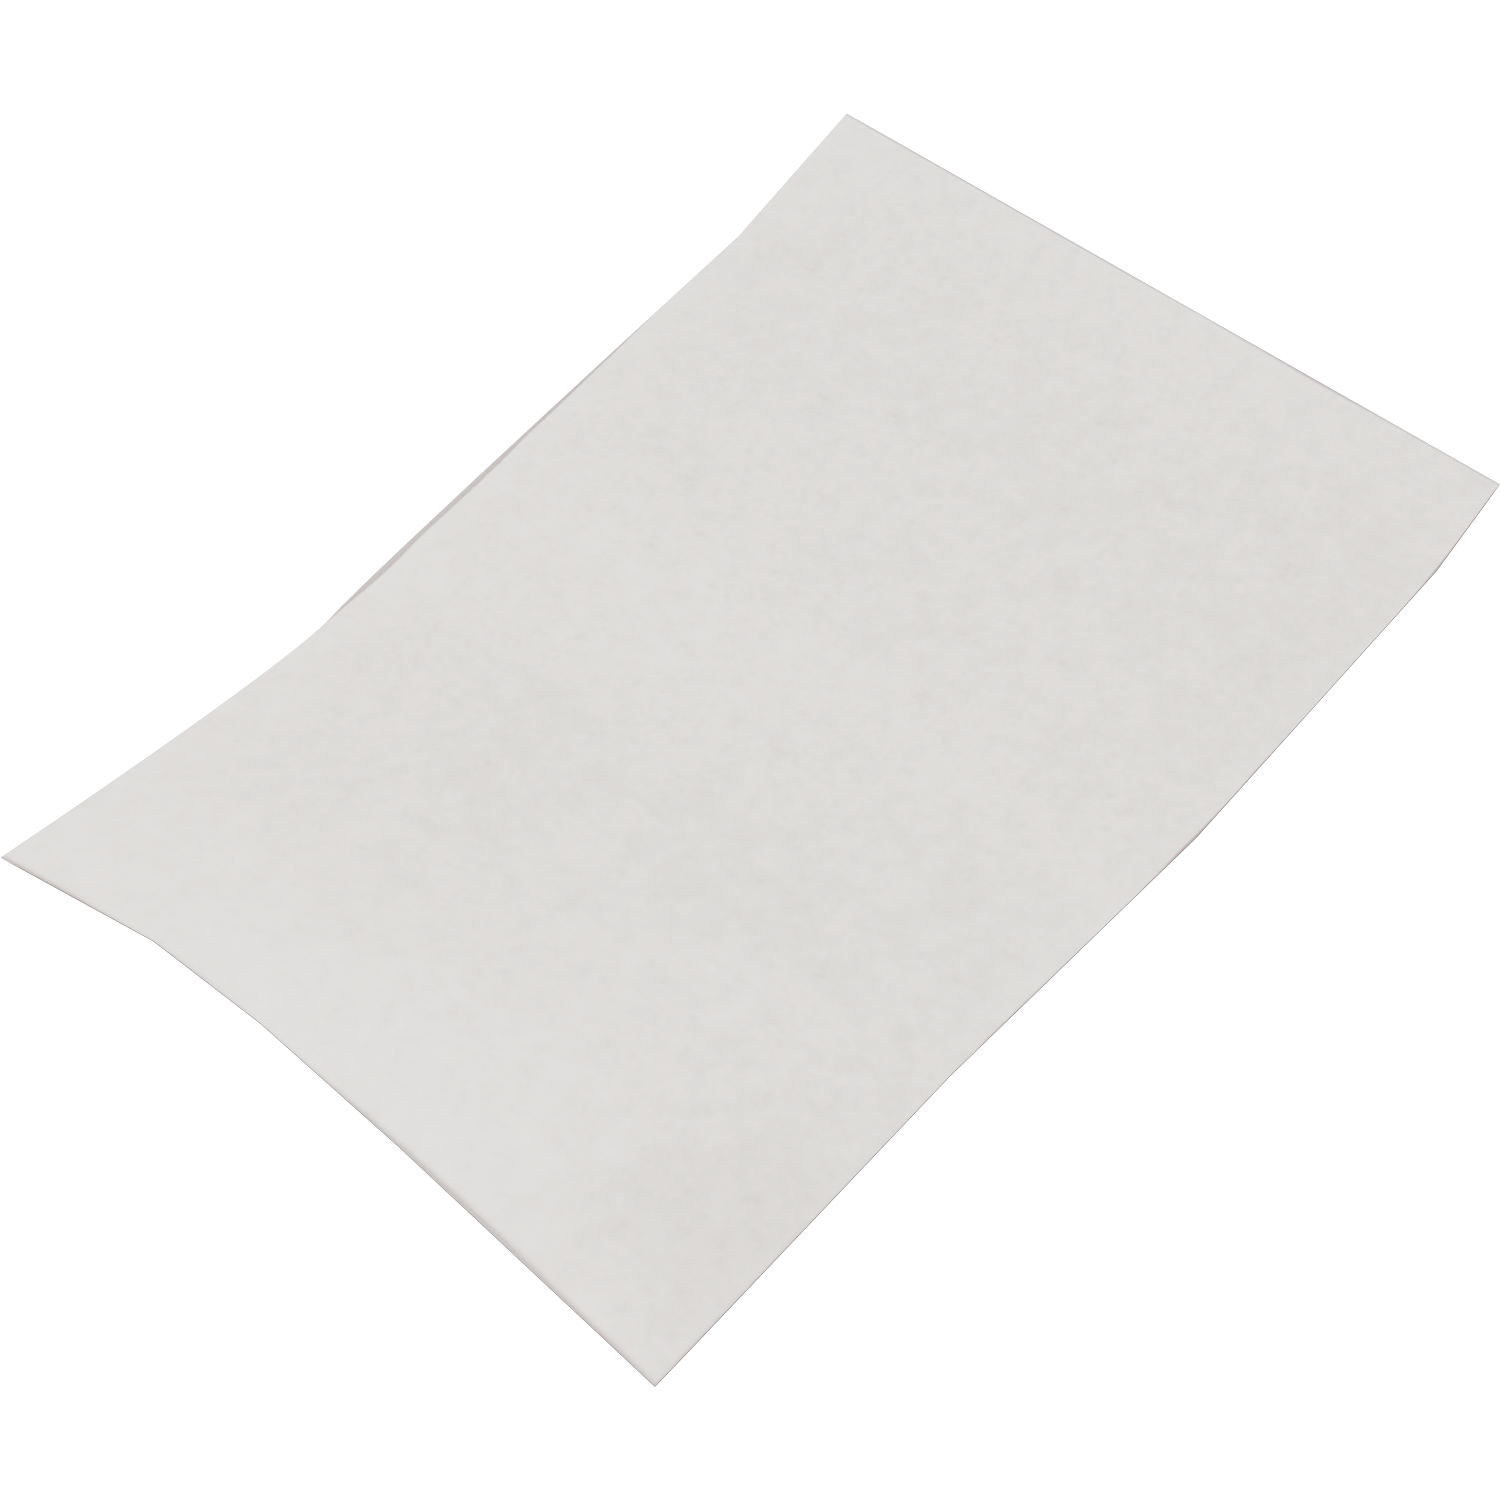 Abstandshalter, 10x15cm, ersatzpapier, weiß 1